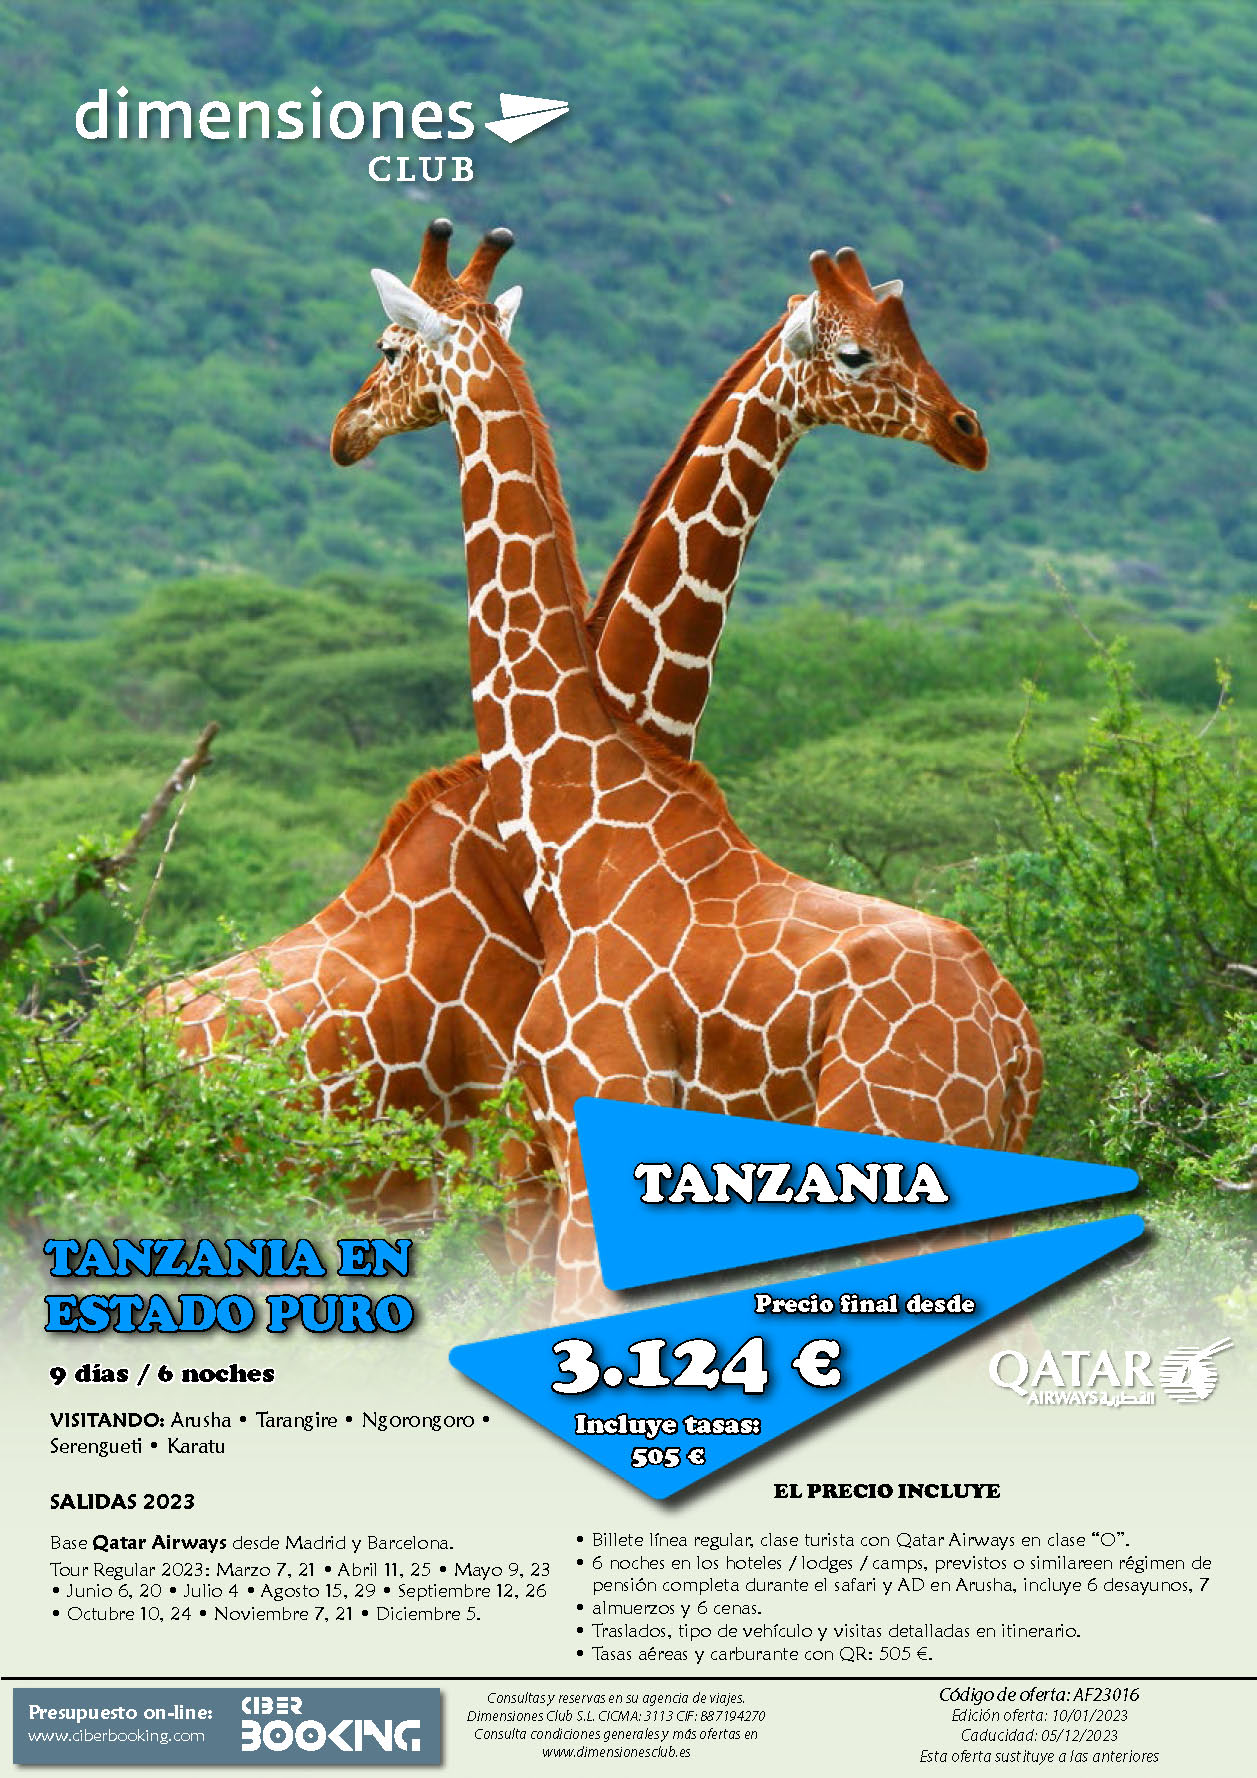 Oferta Dimensiones Club Tanzania en Estado Puro 2023 9 dias salidas desde Madrid y Barcelona vuelos Qatar Airways